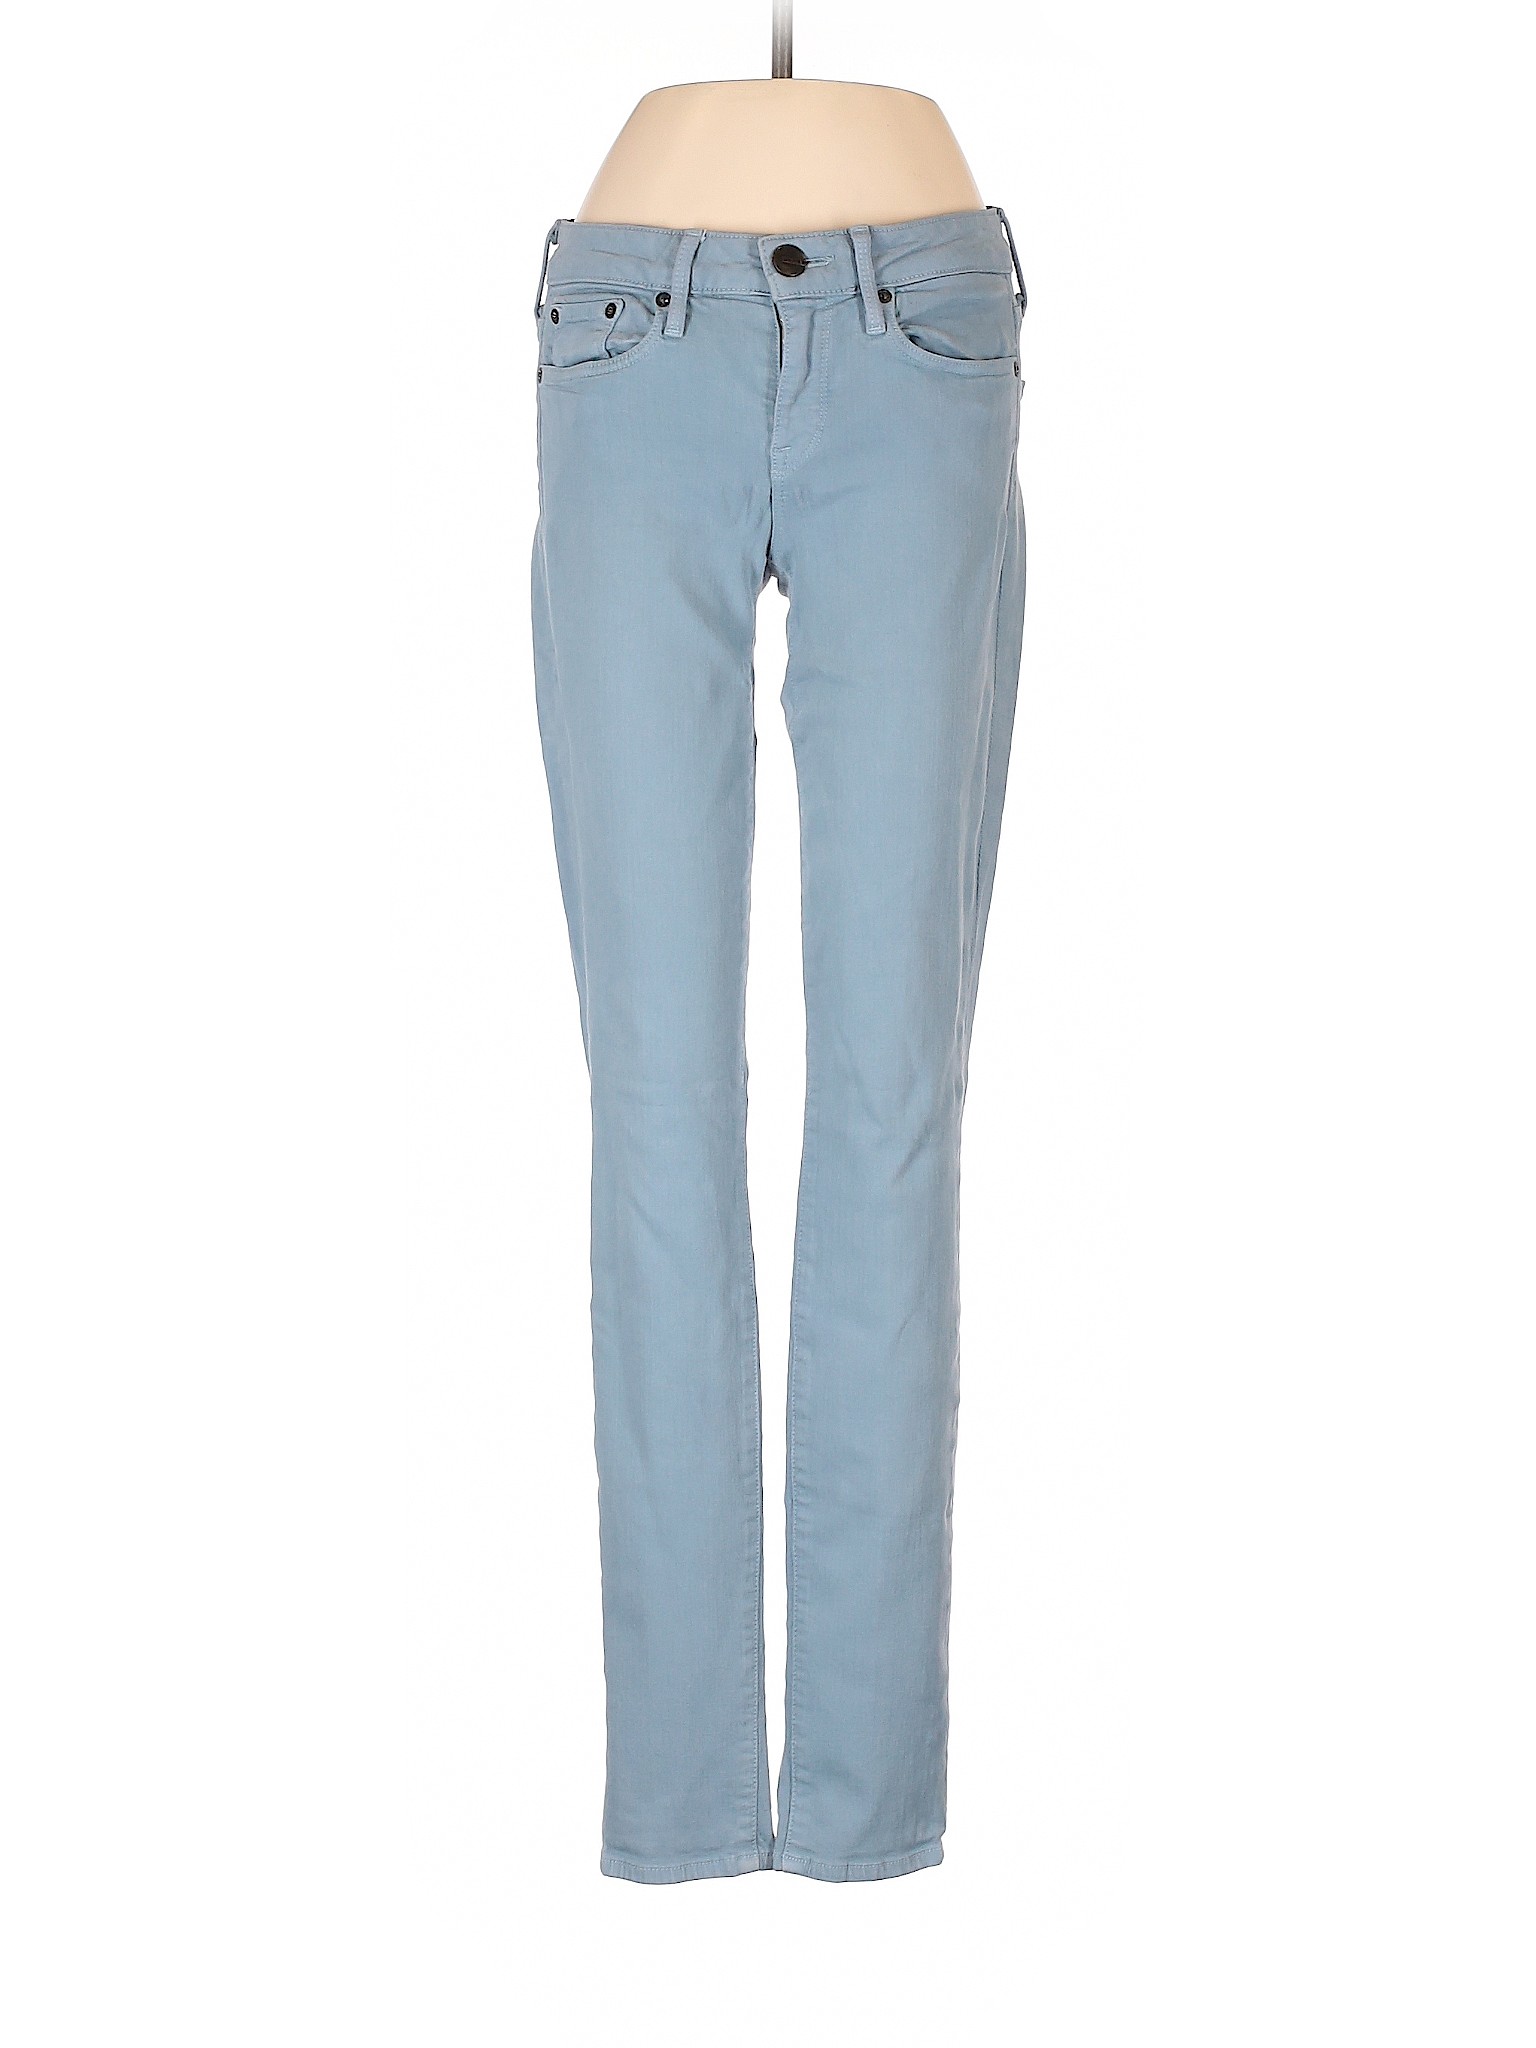 Vince. Women Blue Jeans 26W | eBay